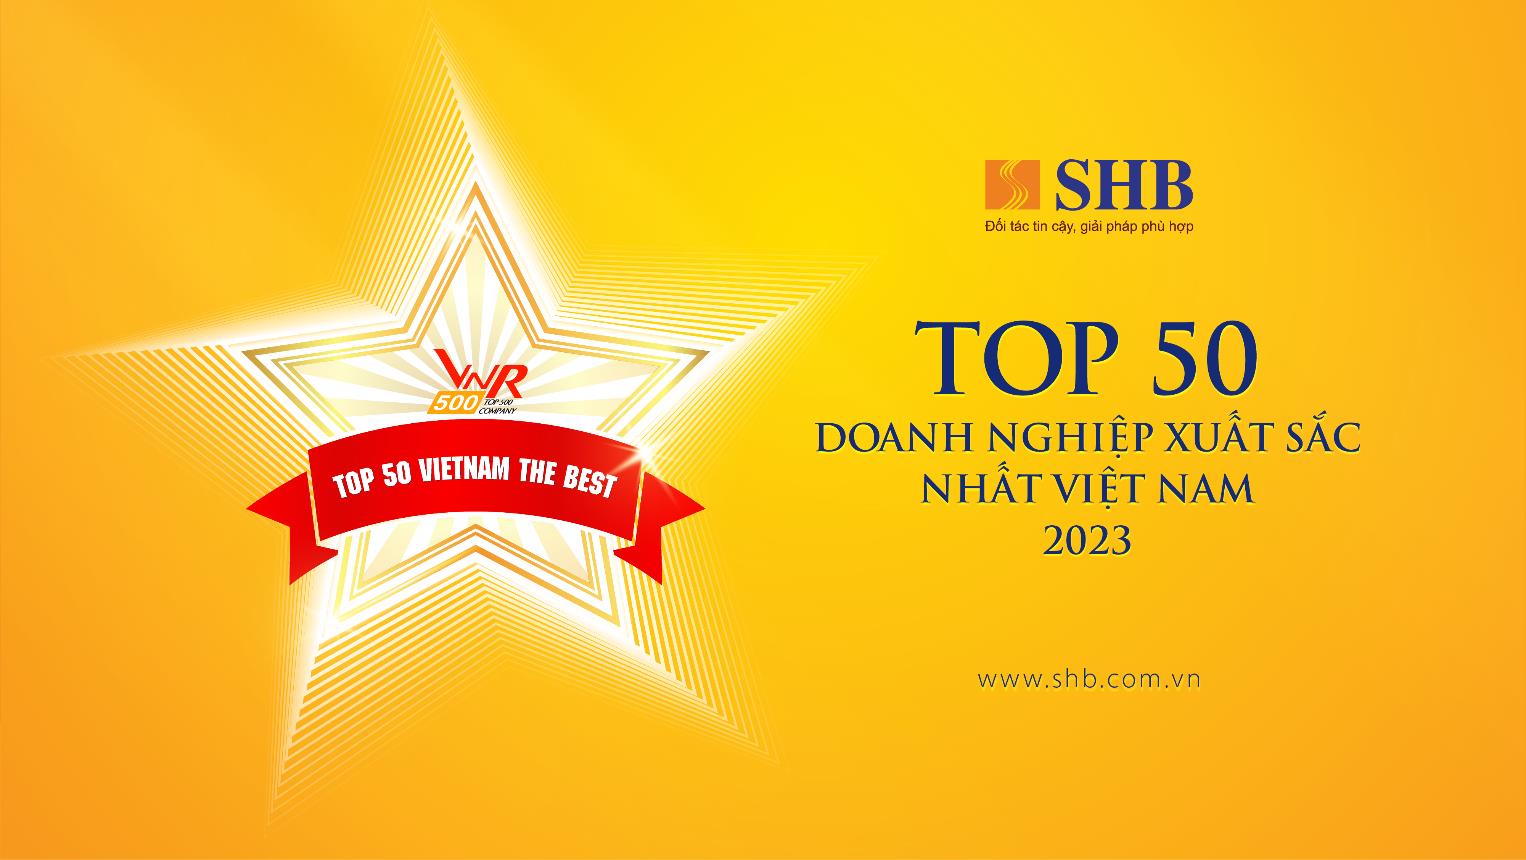 SHB 5 năm liên tiếp được vinh danh “Top 50 doanh nghiệp xuất sắc nhất Việt Nam” - Ảnh 1.